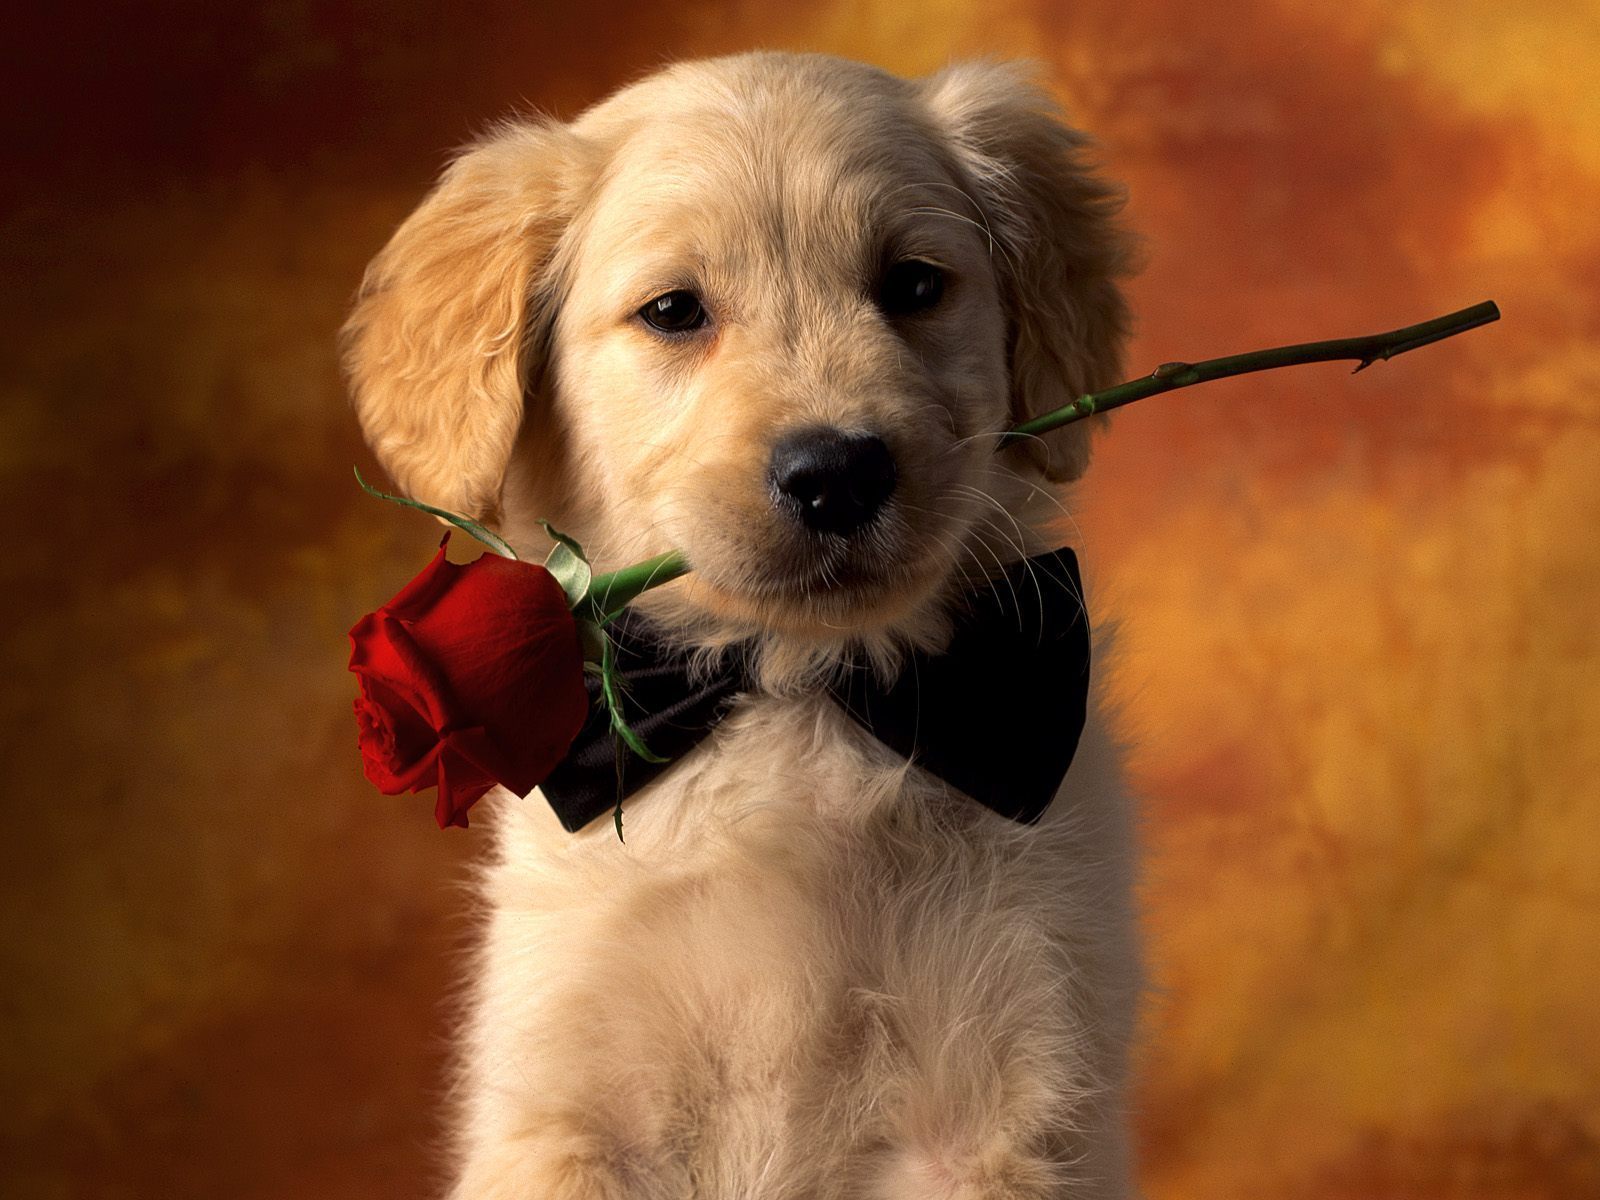 Puppy-Love-puppies-9460996-1600-1200